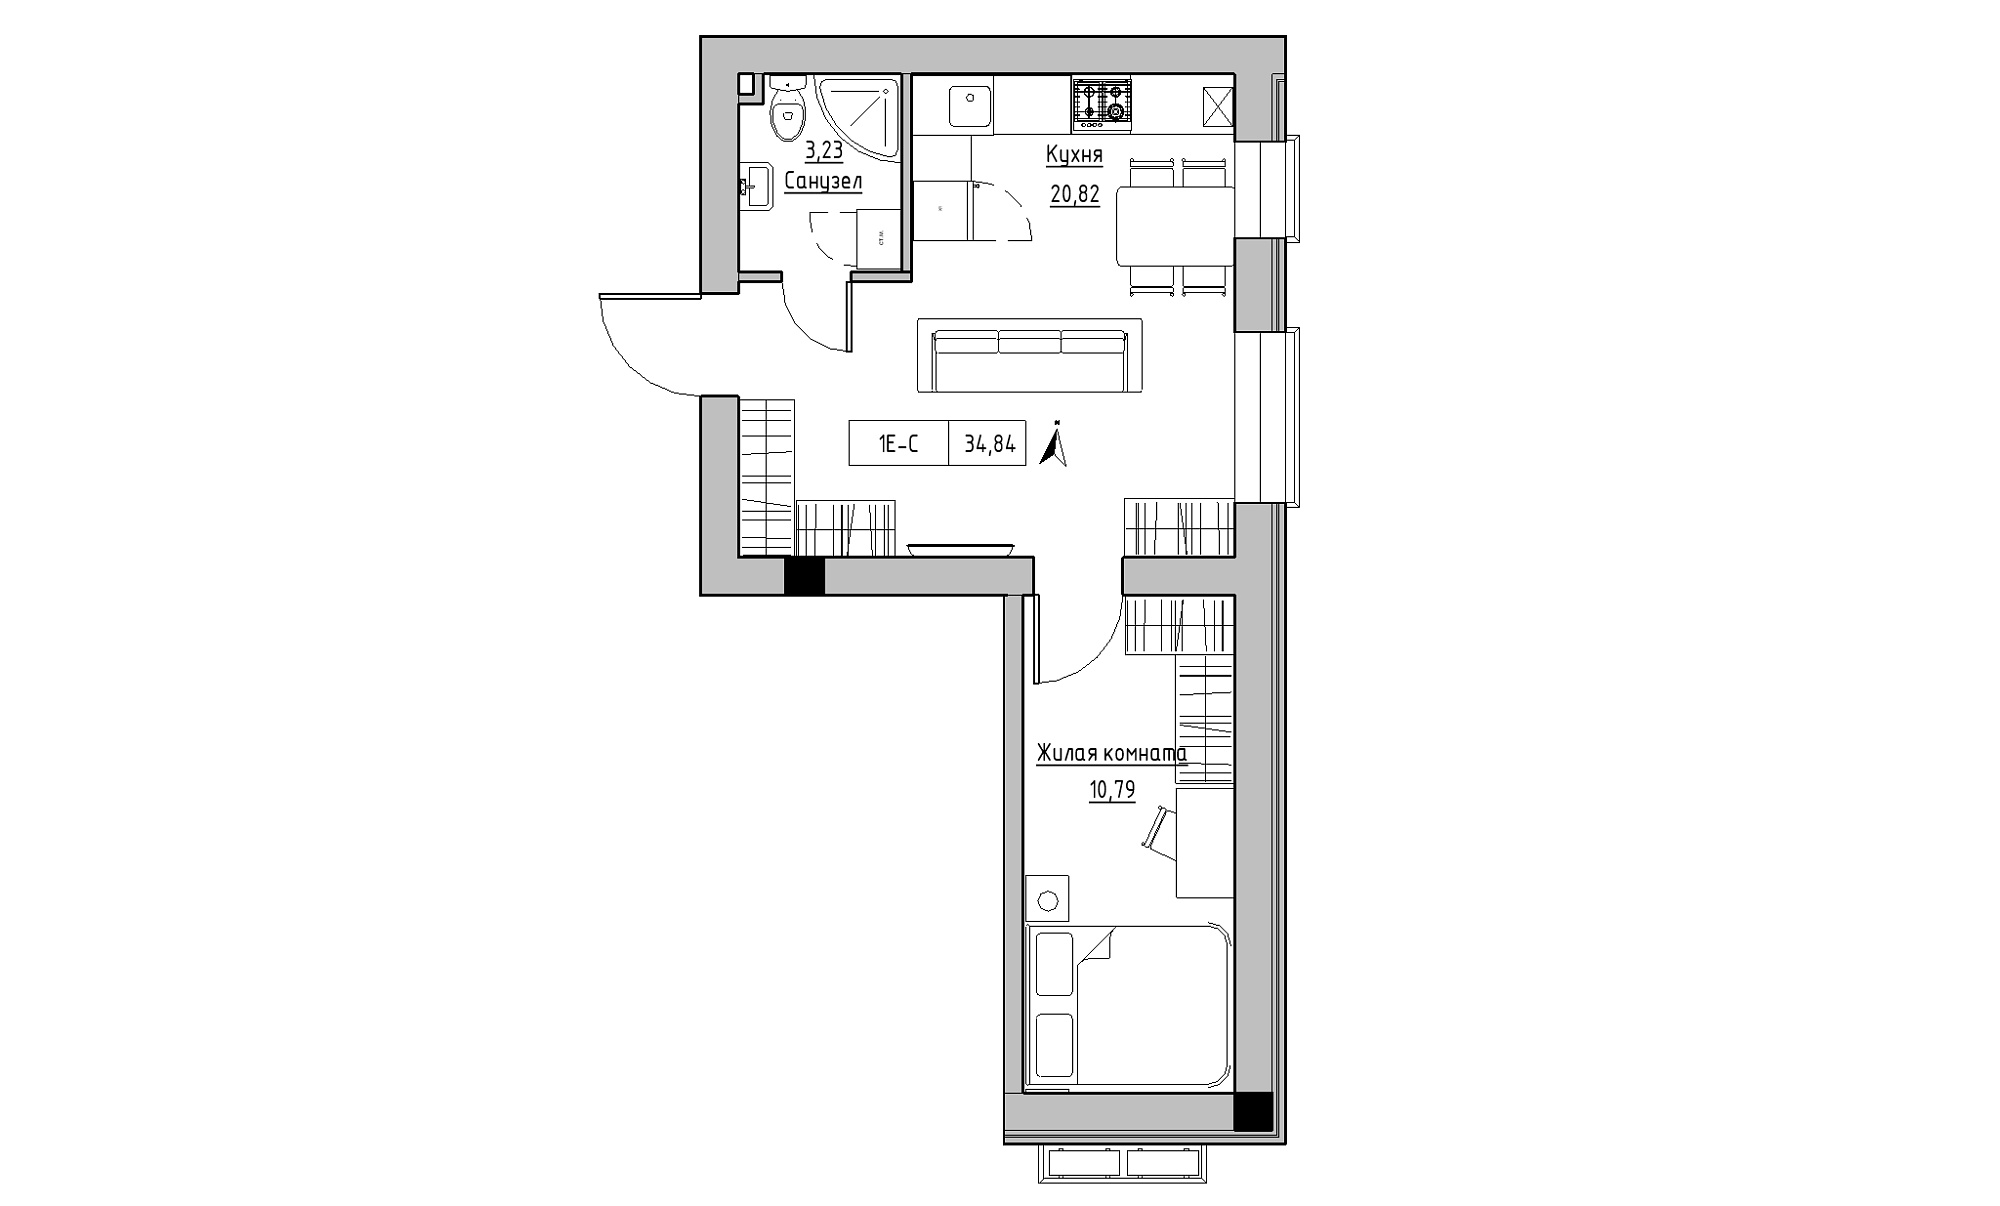 Планування 1-к квартира площею 34.84м2, KS-023-01/0008.